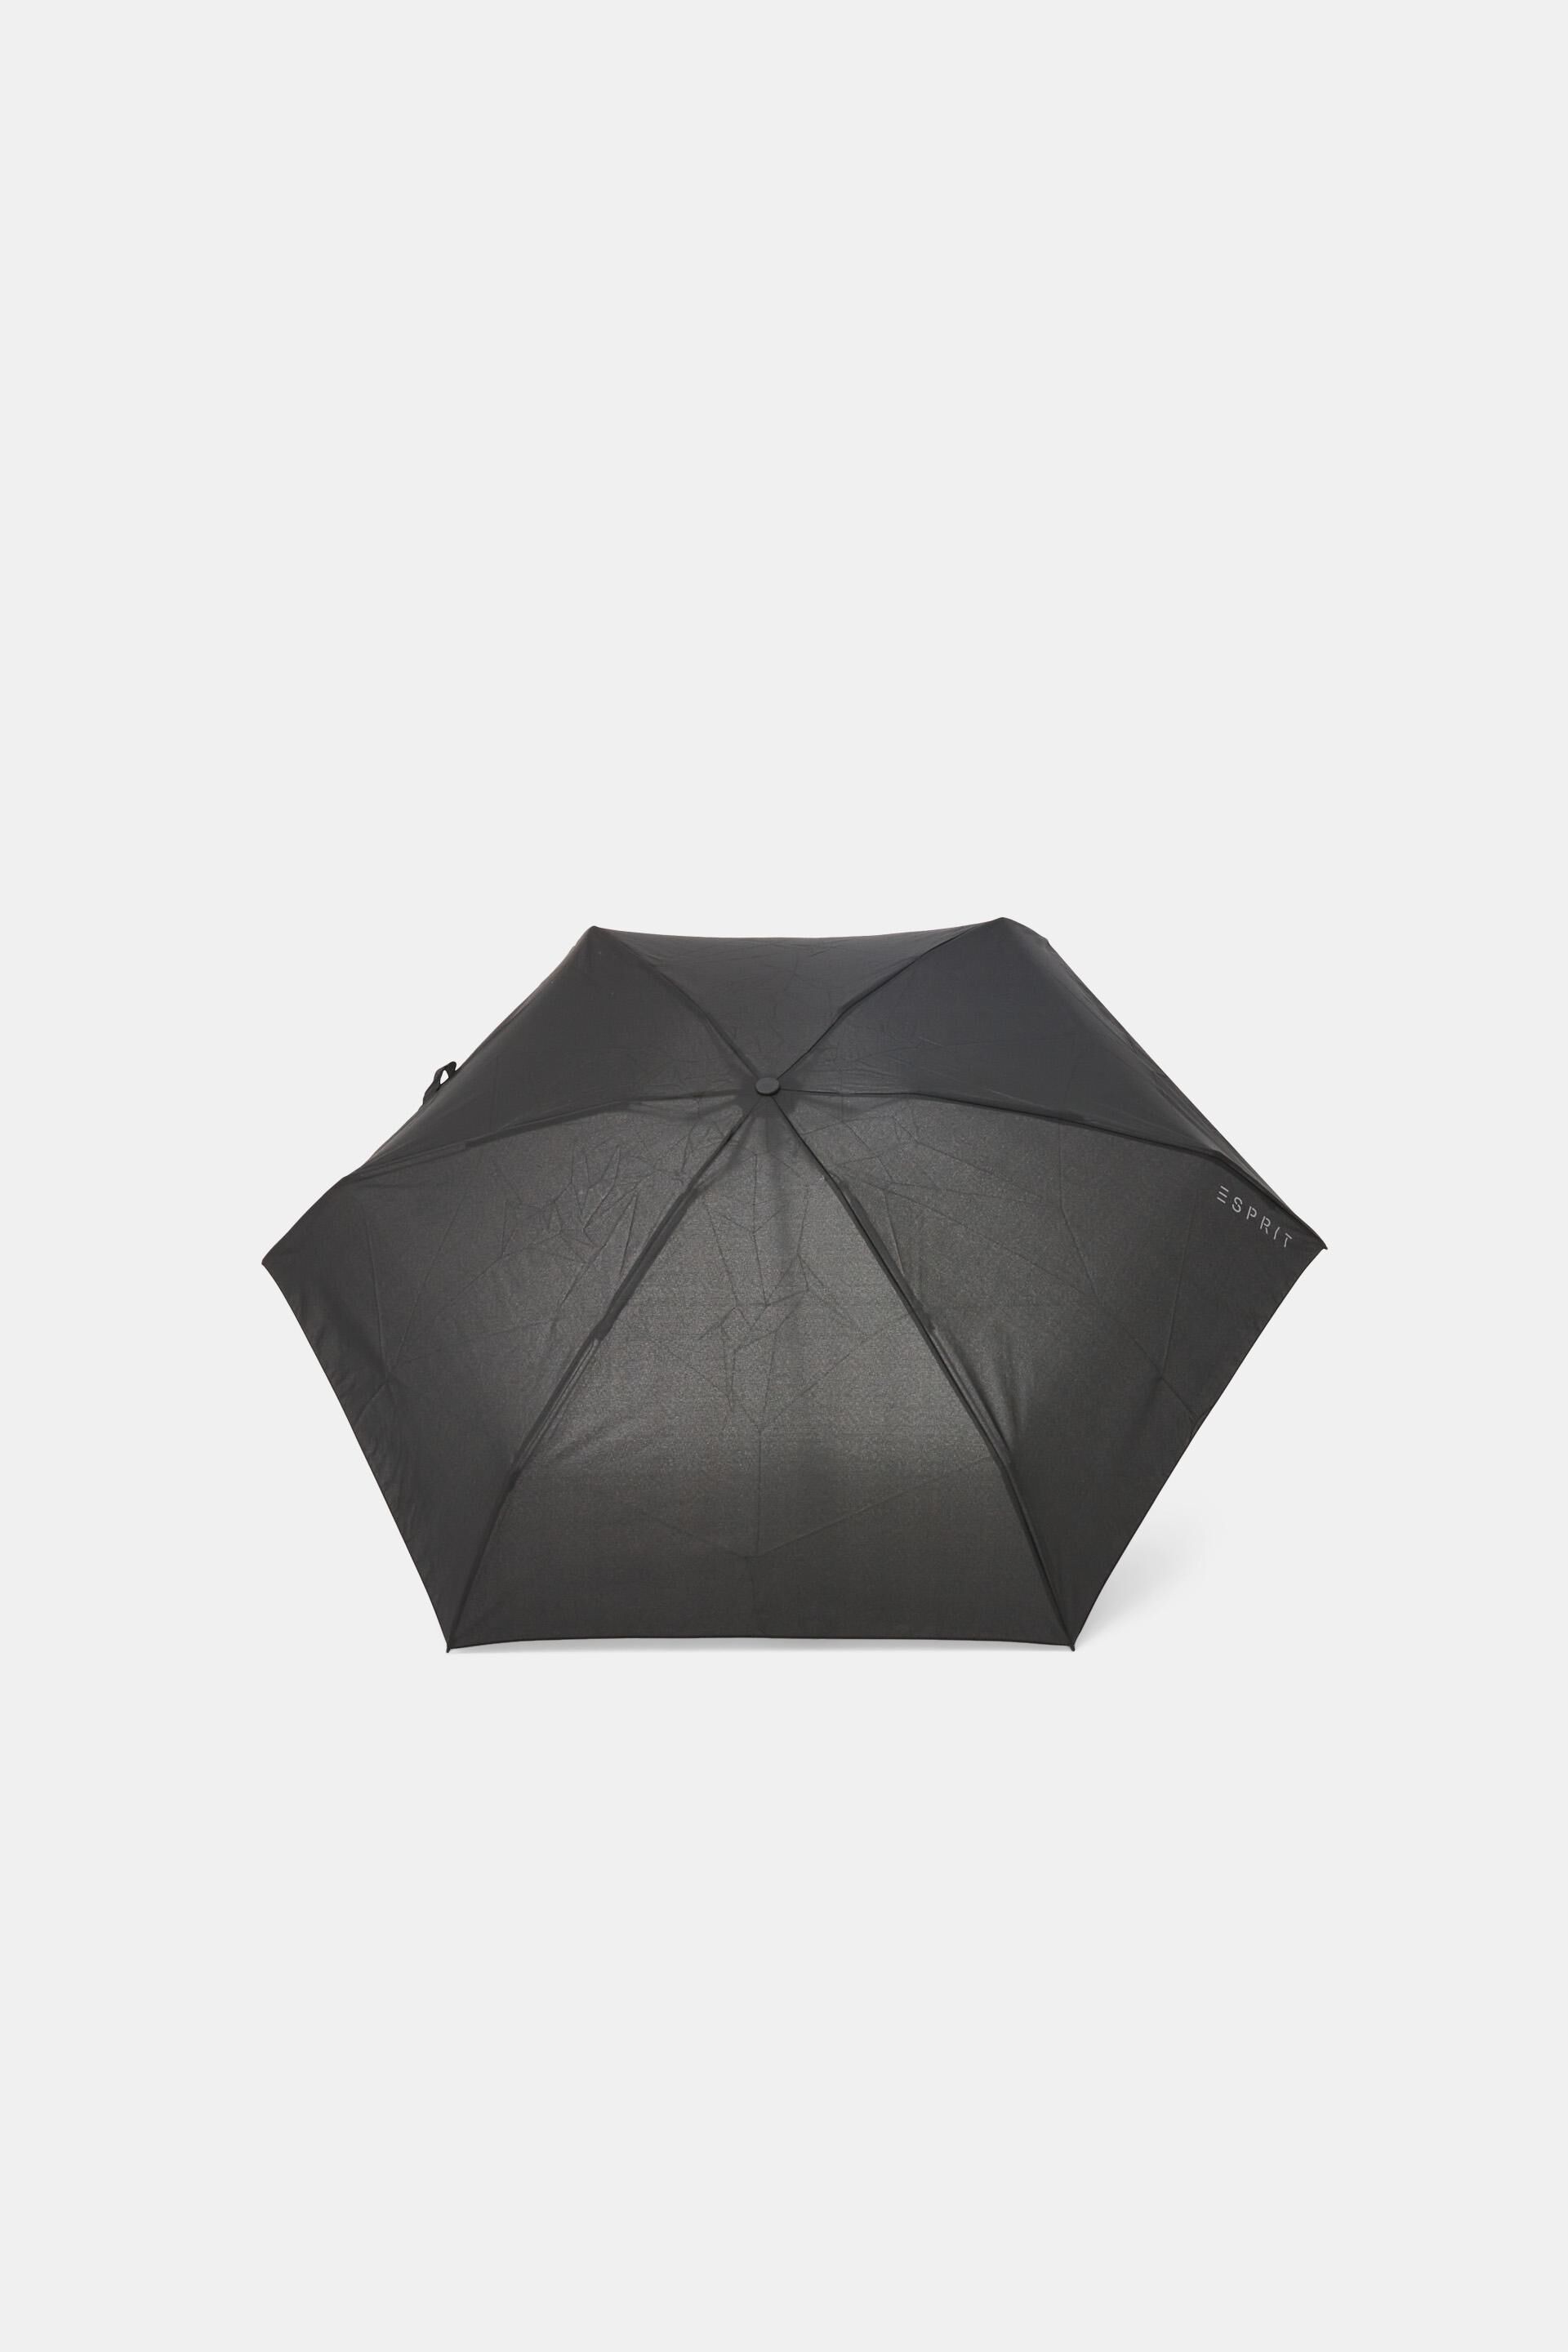 Esprit Plain mini pocket umbrella